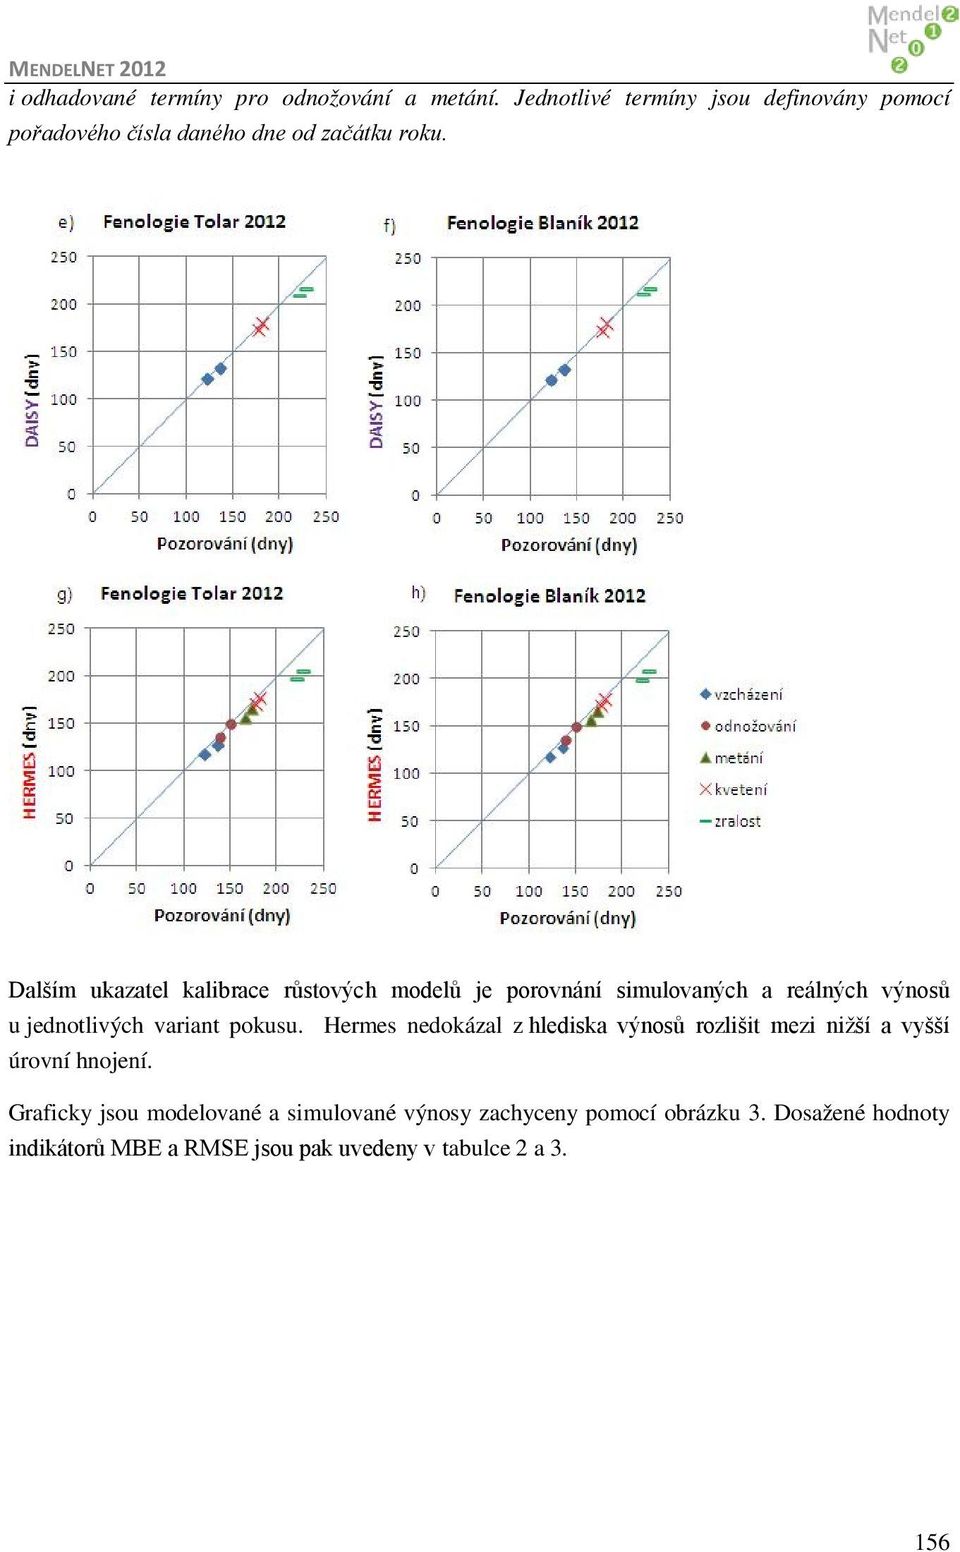 Dalším ukazatel kalibrace růstových modelů je porovnání simulovaných a reálných výnosů u jednotlivých variant pokusu.